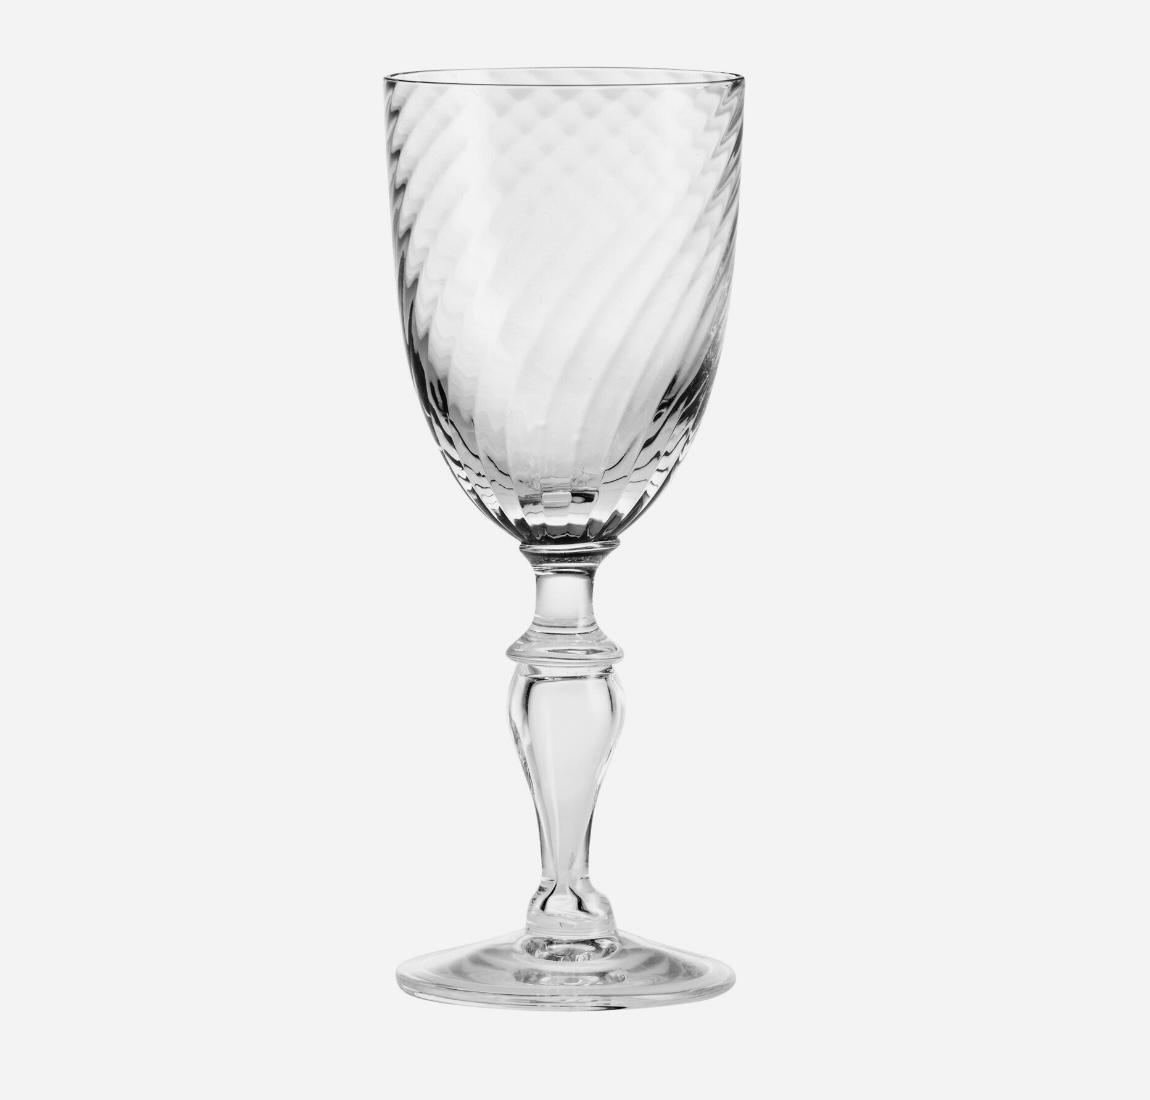 Unikke og smukke portvinsglas fra Holmegaard i mundblæst glas